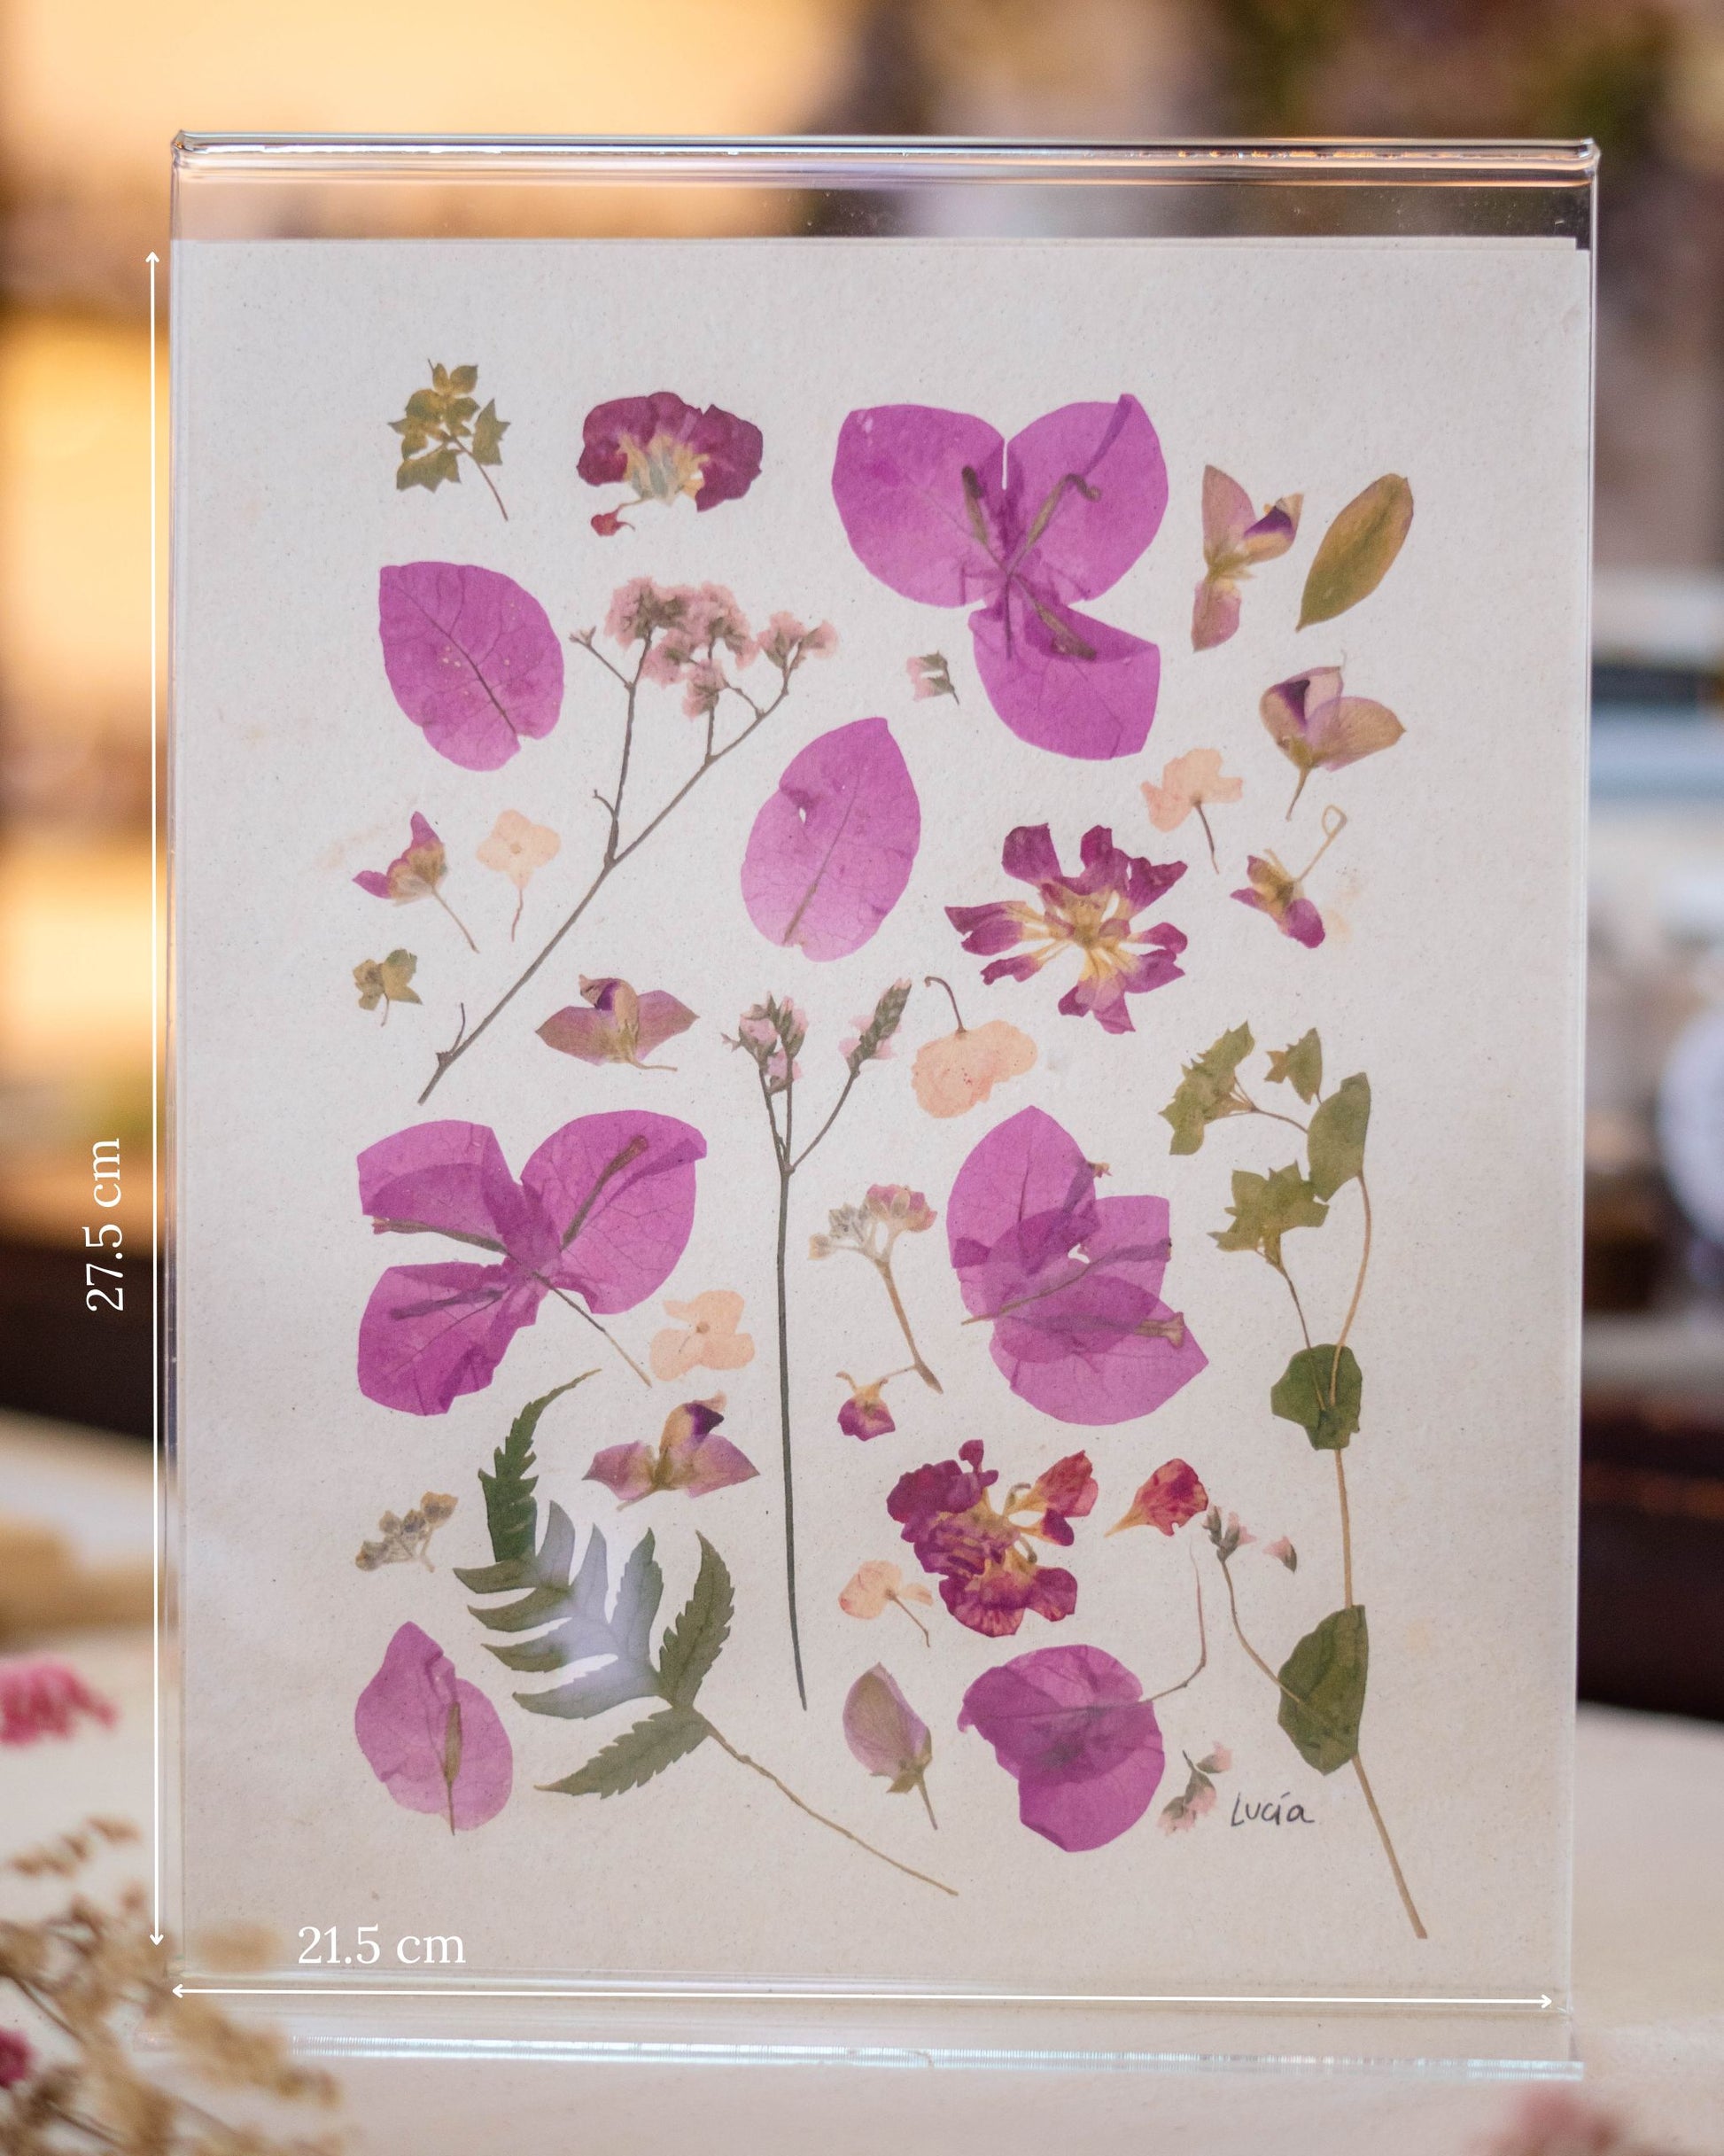 Prints de collage de flores colombianas prensadas autografiadas por la artista, con flores rosadas.